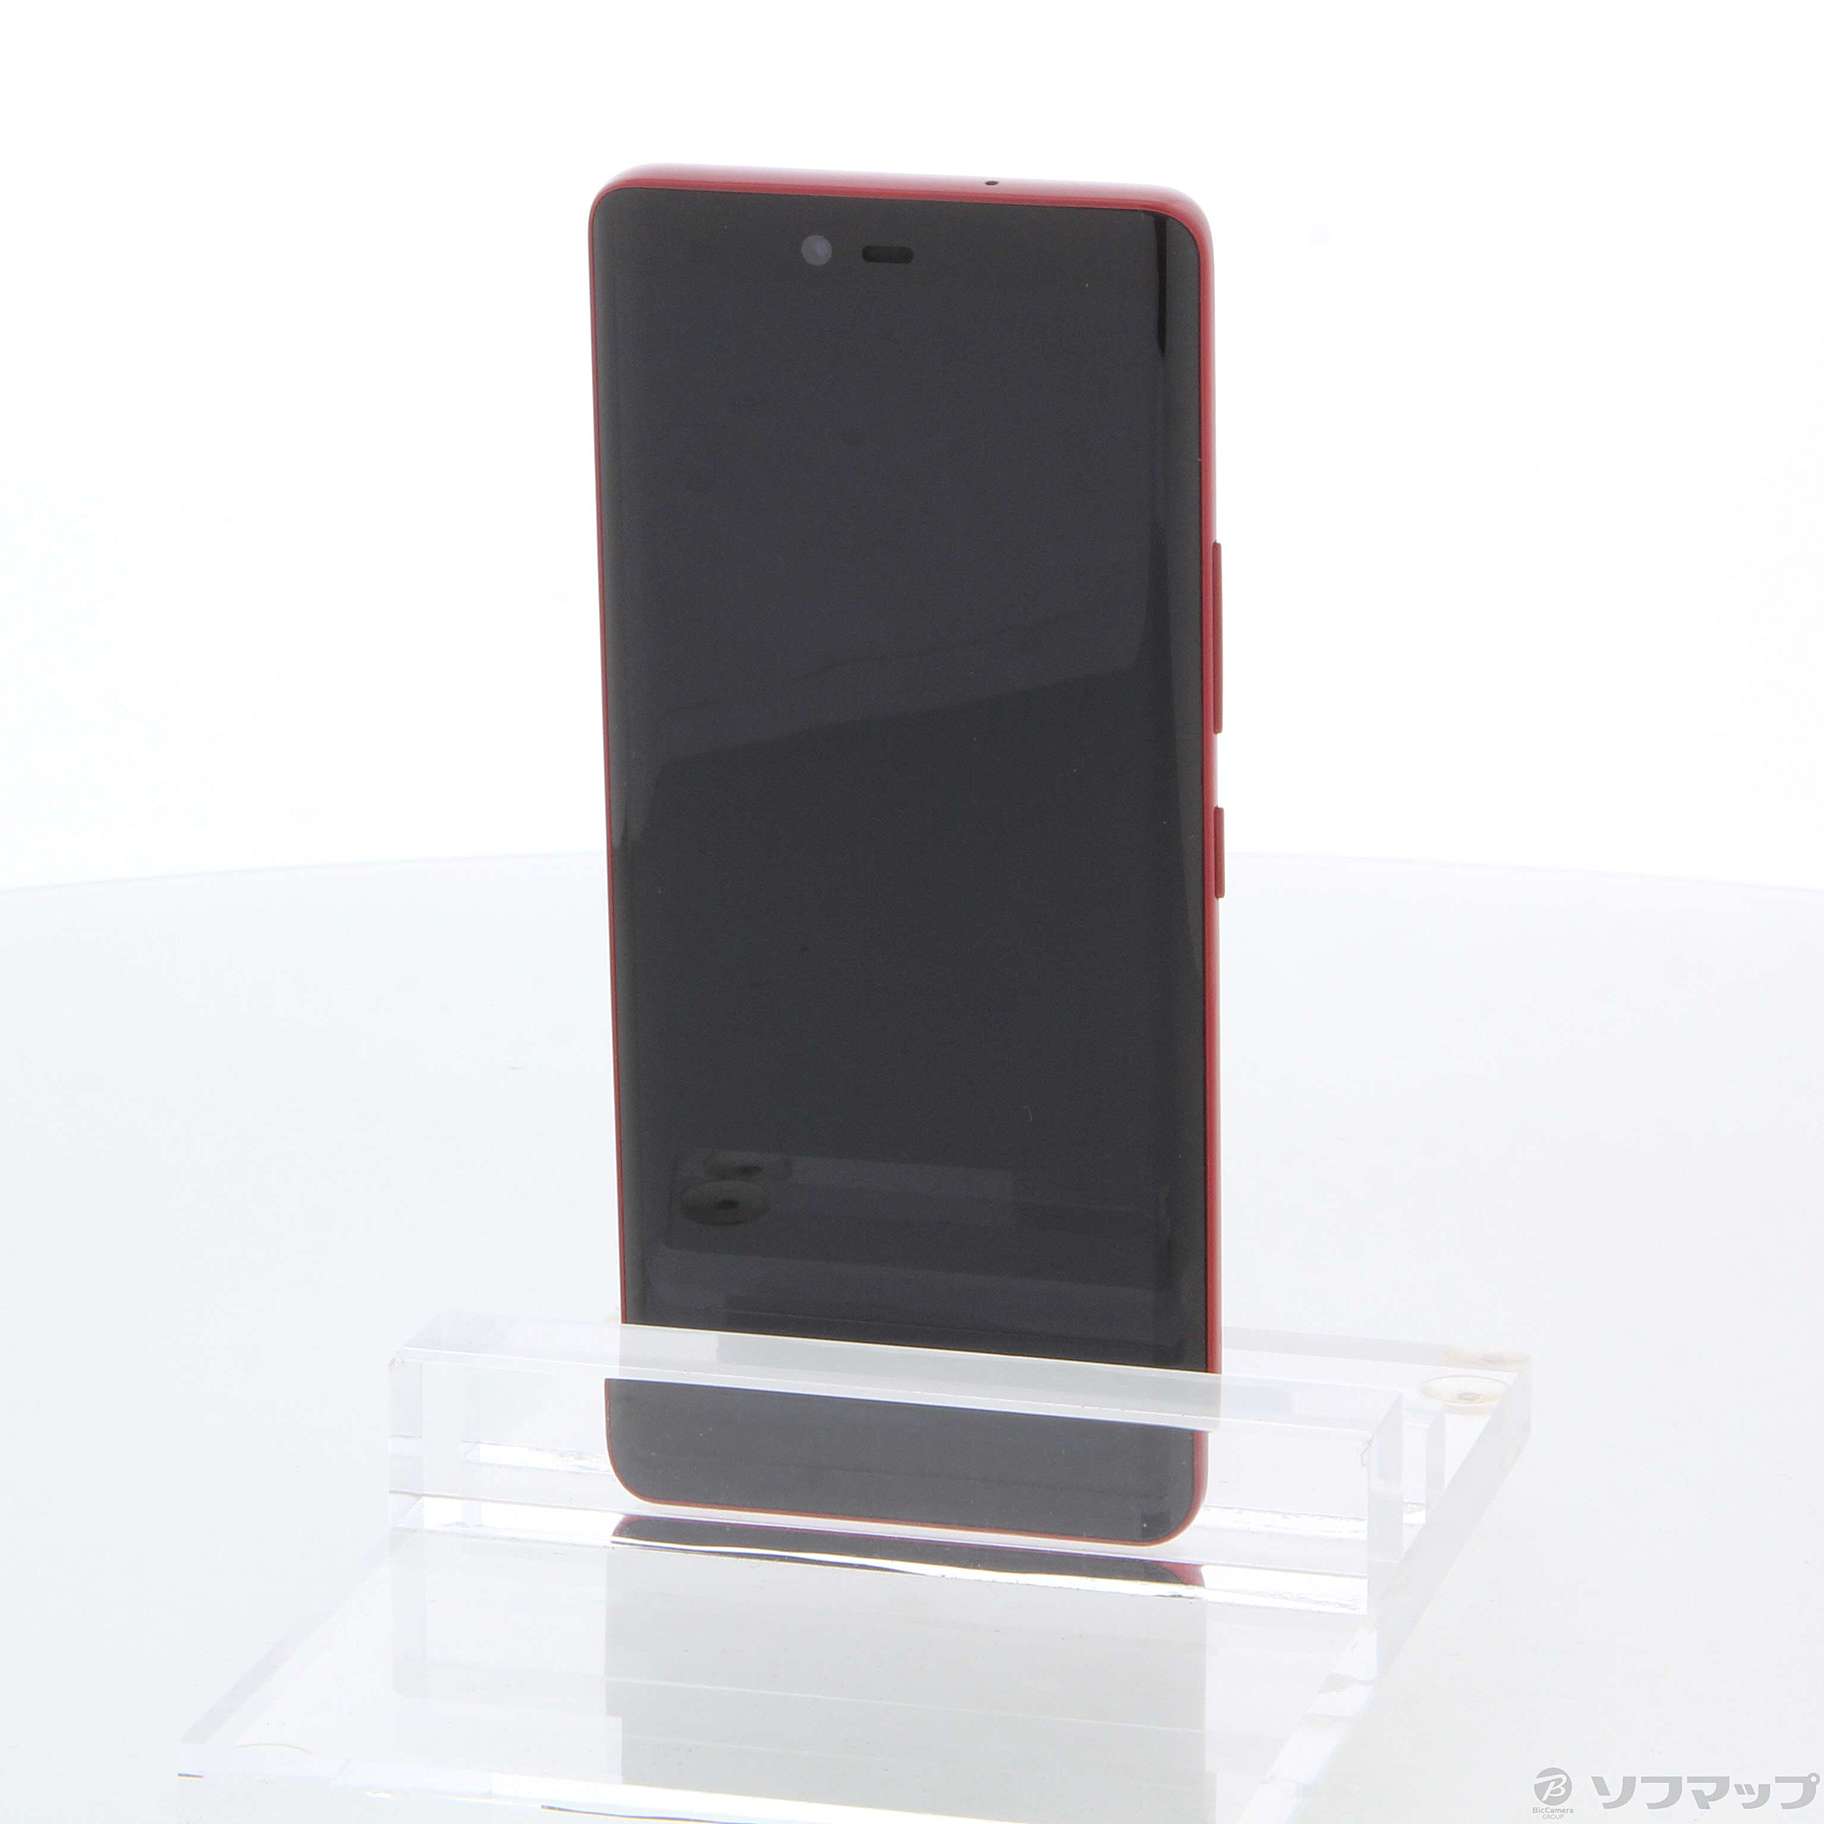 Rakuten Hand 5G クリムゾンレッド 128 GB その他 - スマートフォン本体